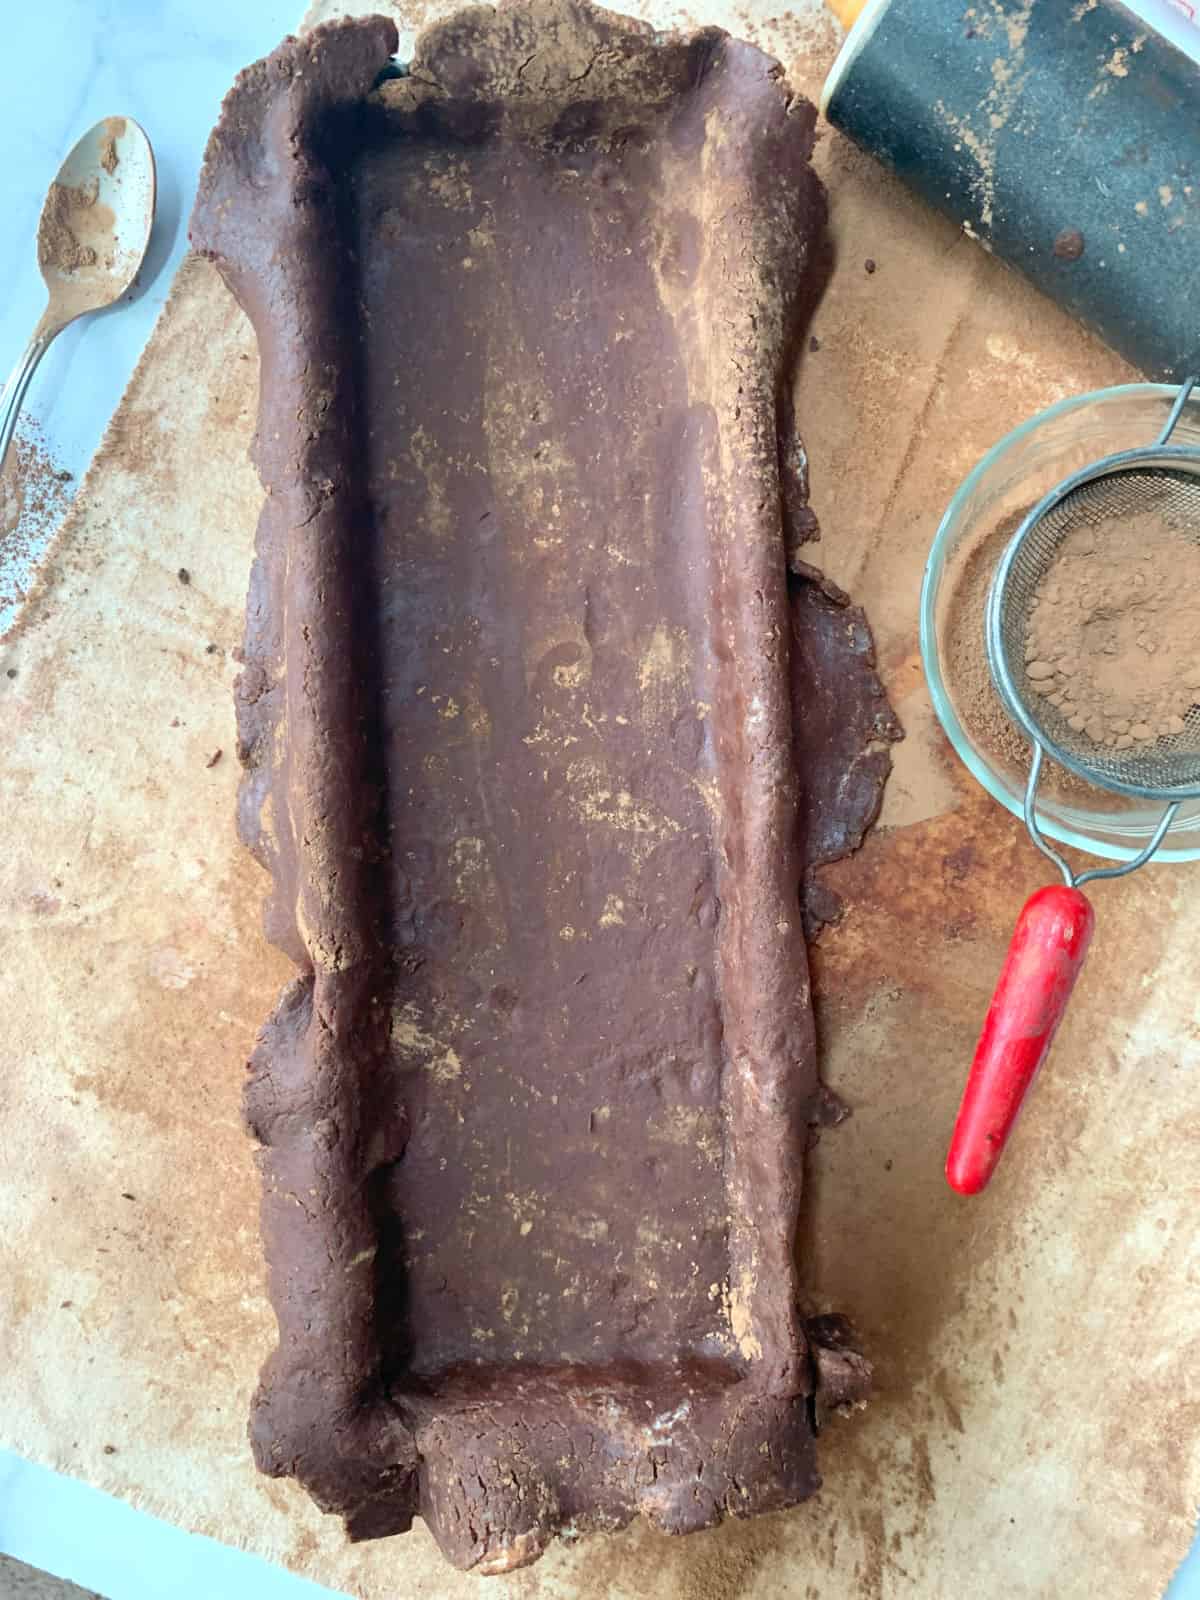 Chocolate dough in a tart pan.